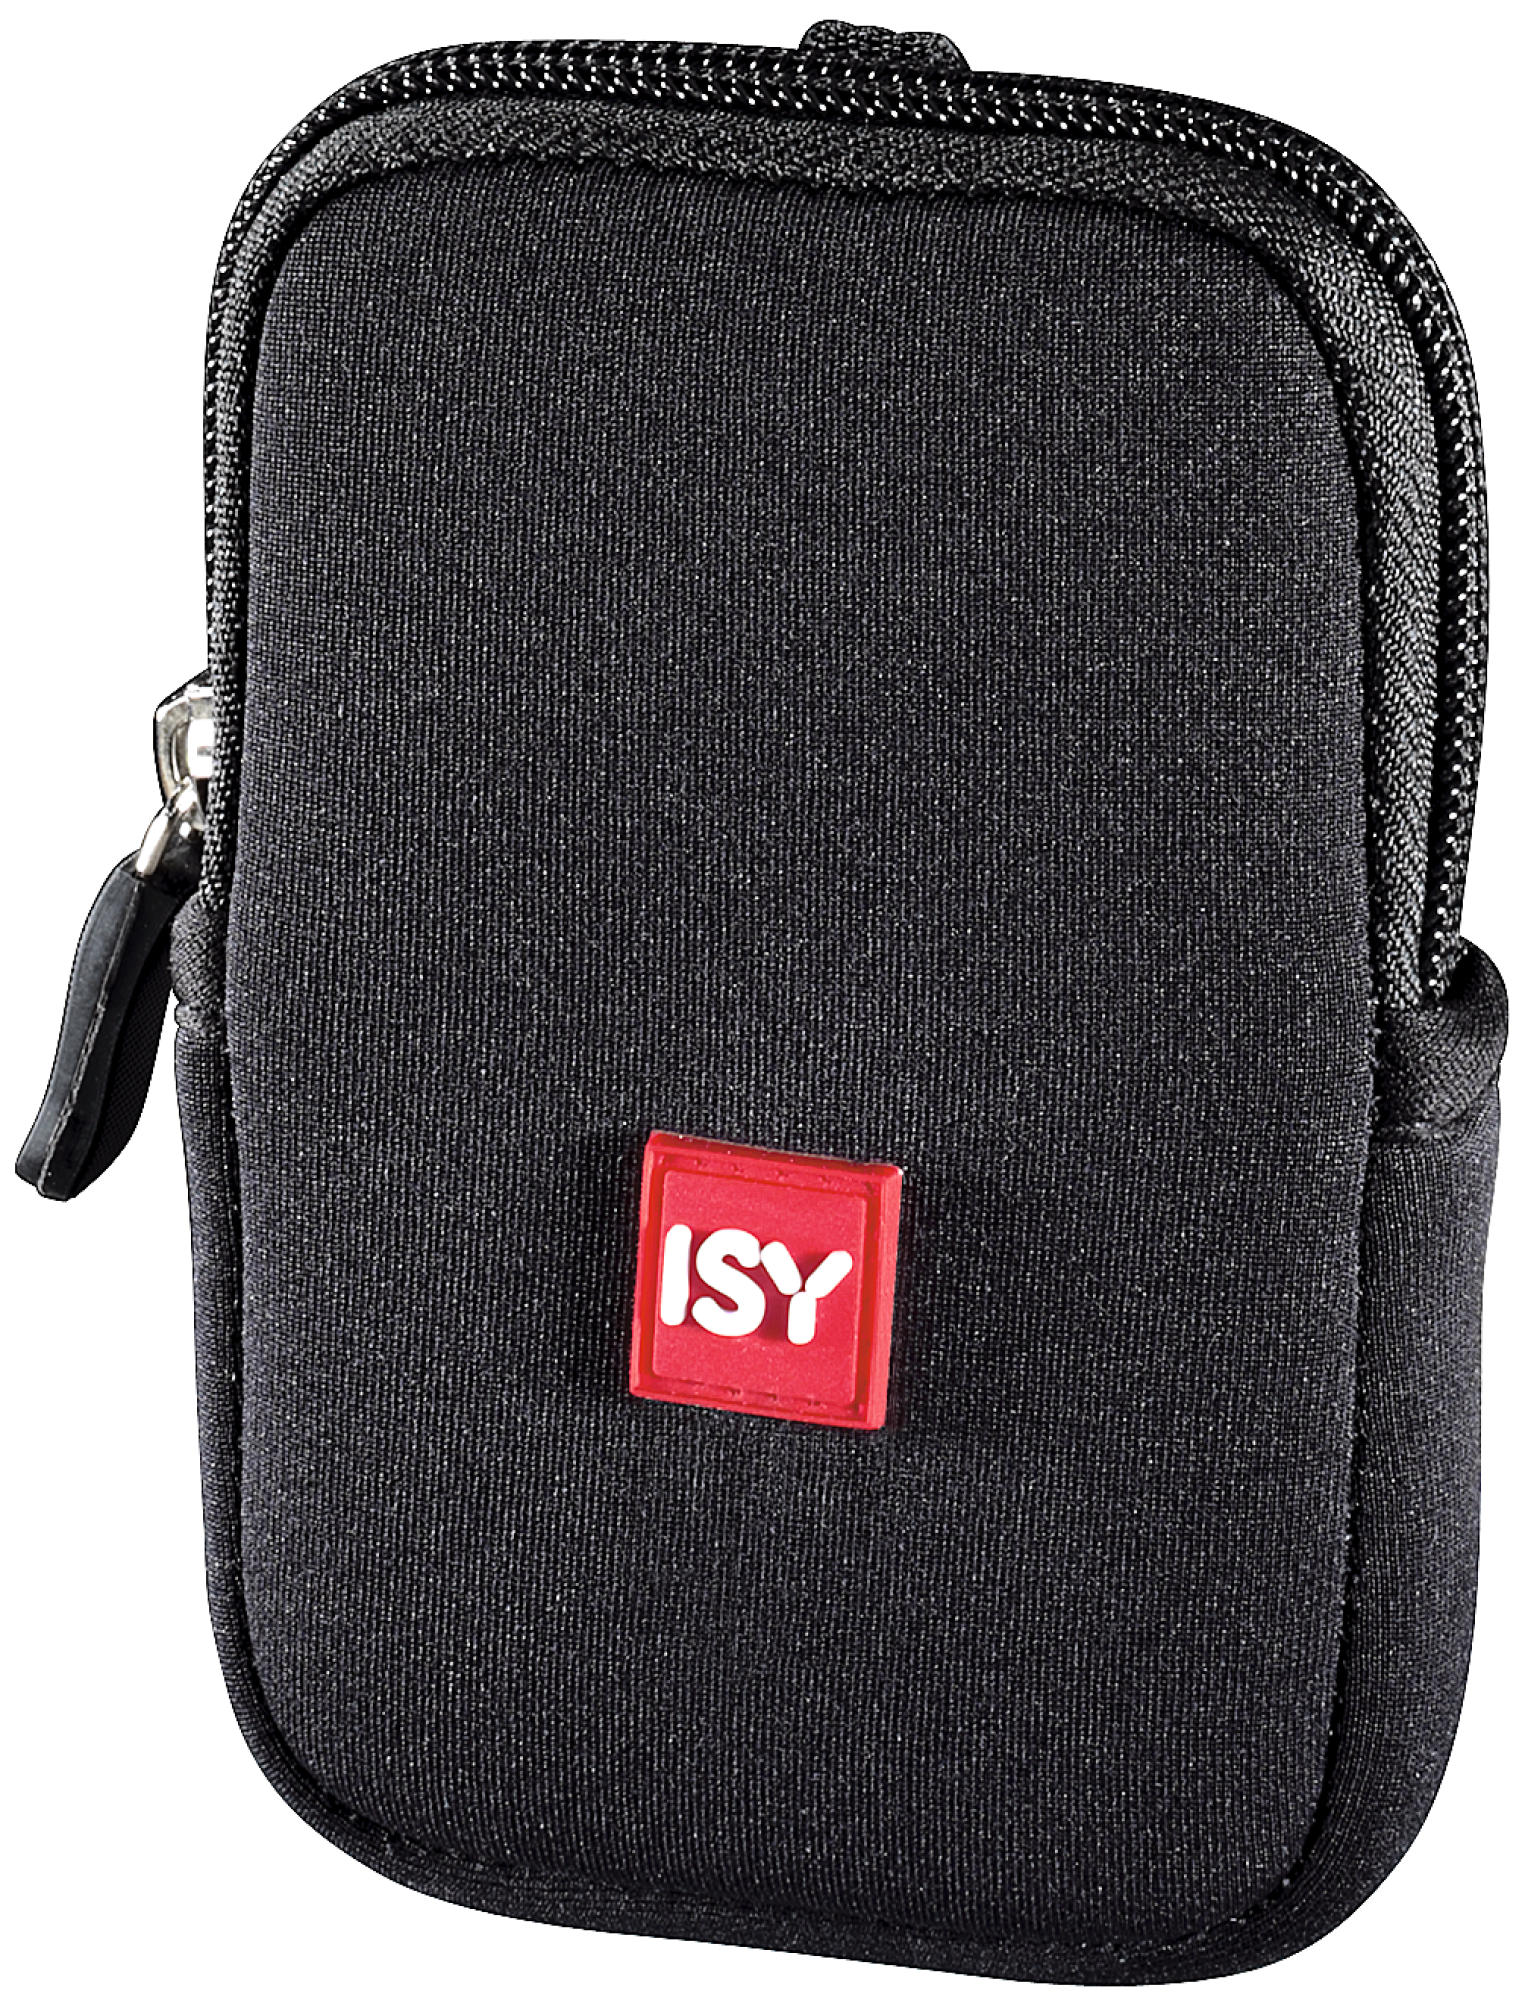 Schwarz Tasche, IPB-1000 ISY